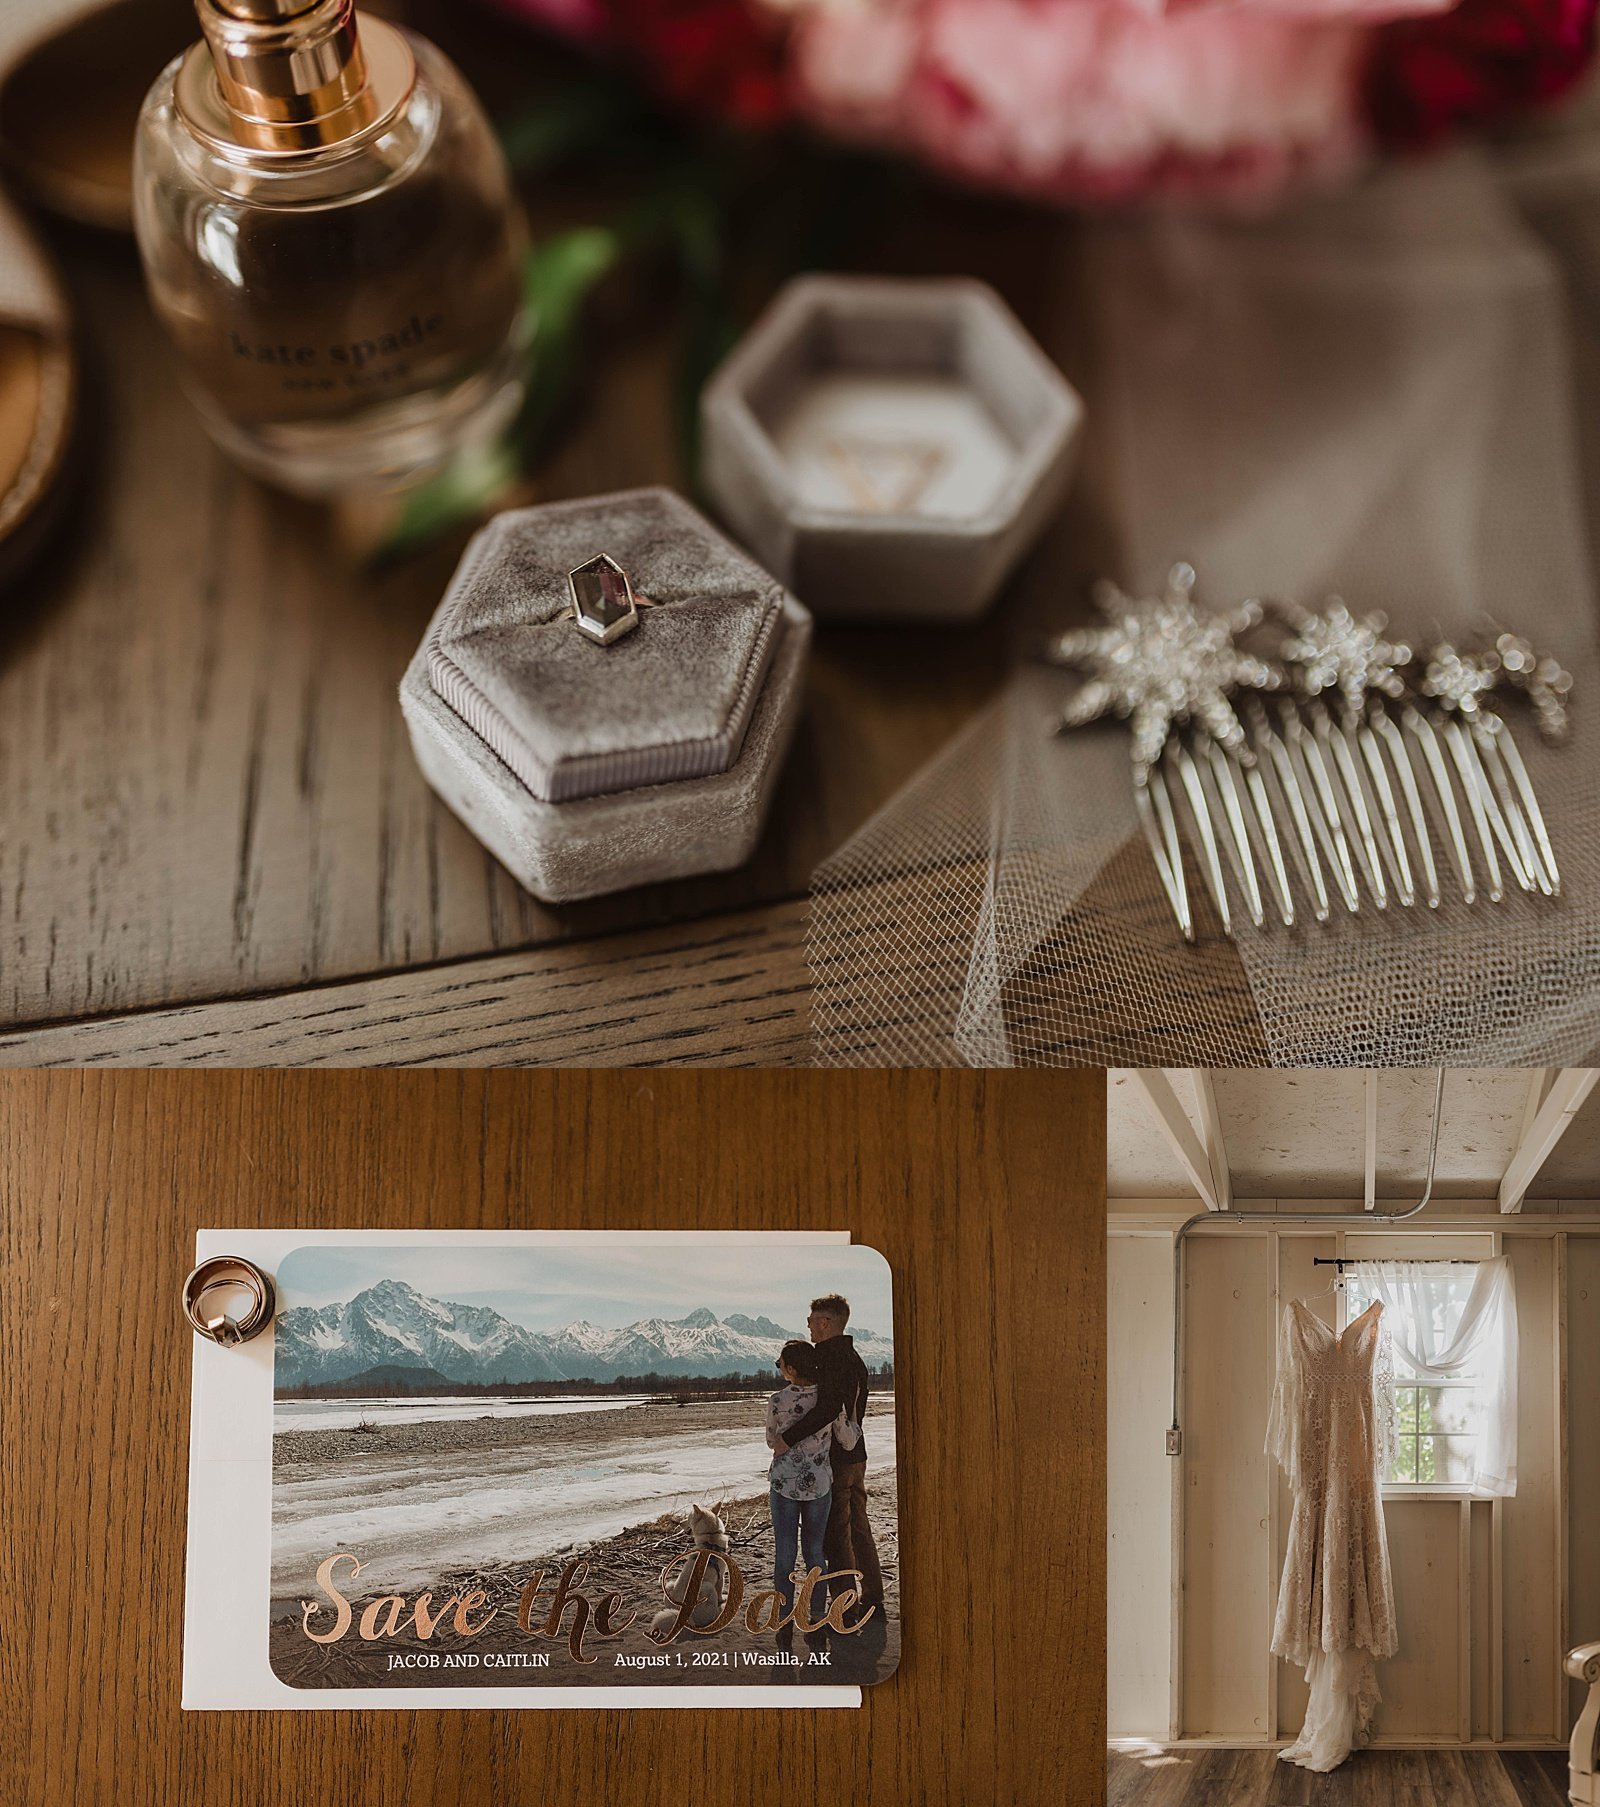  Ringbox and postcard on desk for Alaska wedding 